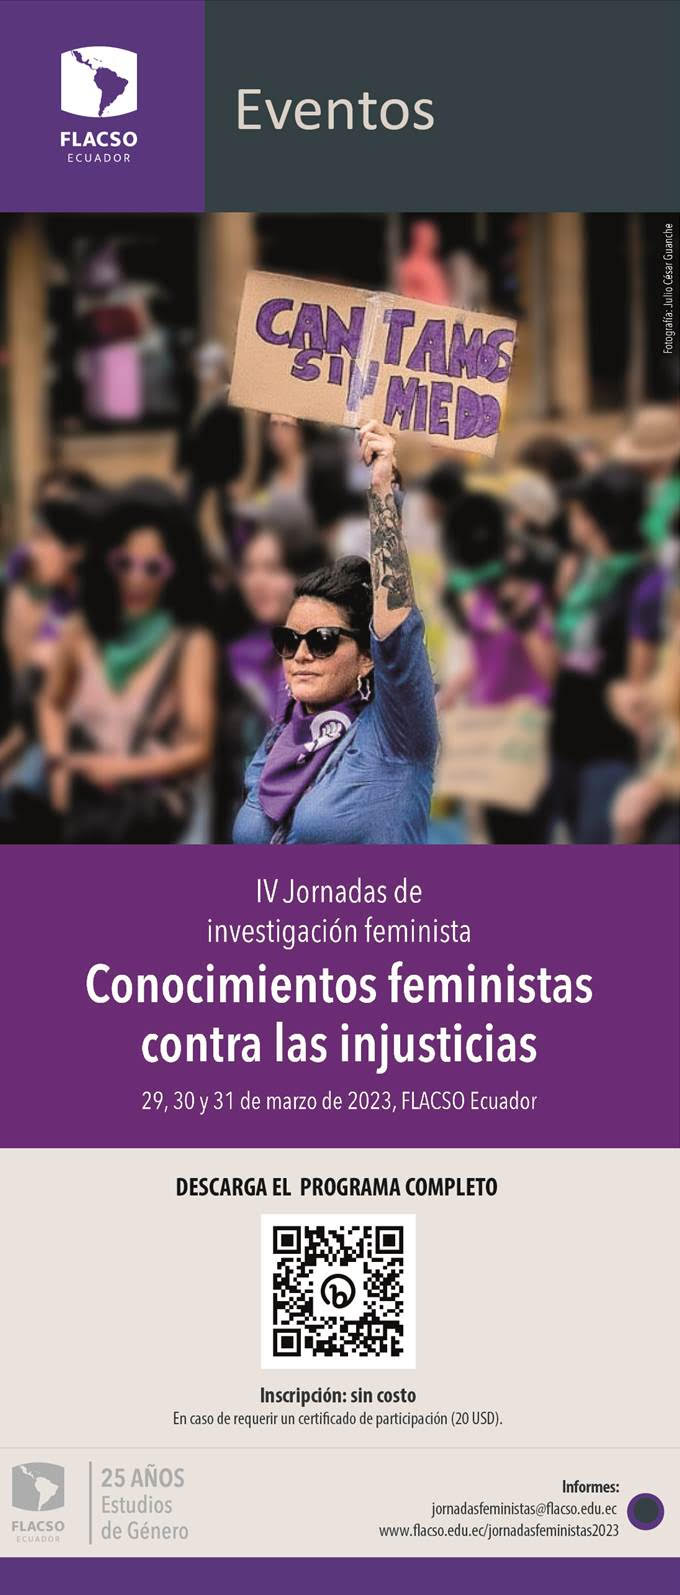 Trayectos y avatares de los feminismos en las universidades latinoamericanas